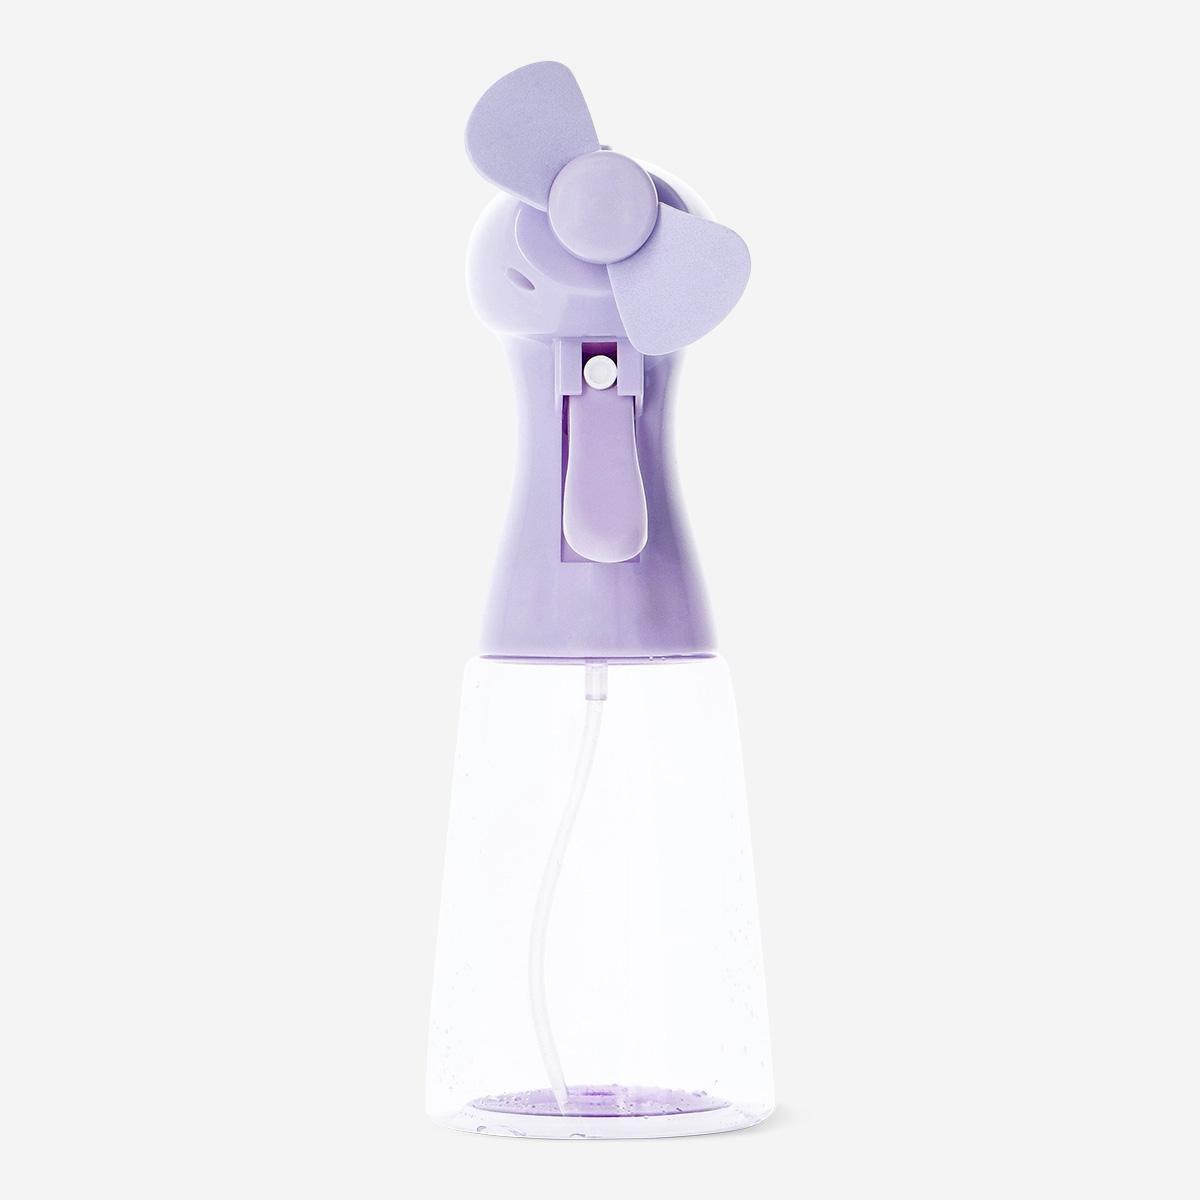 Purple mist spray fan